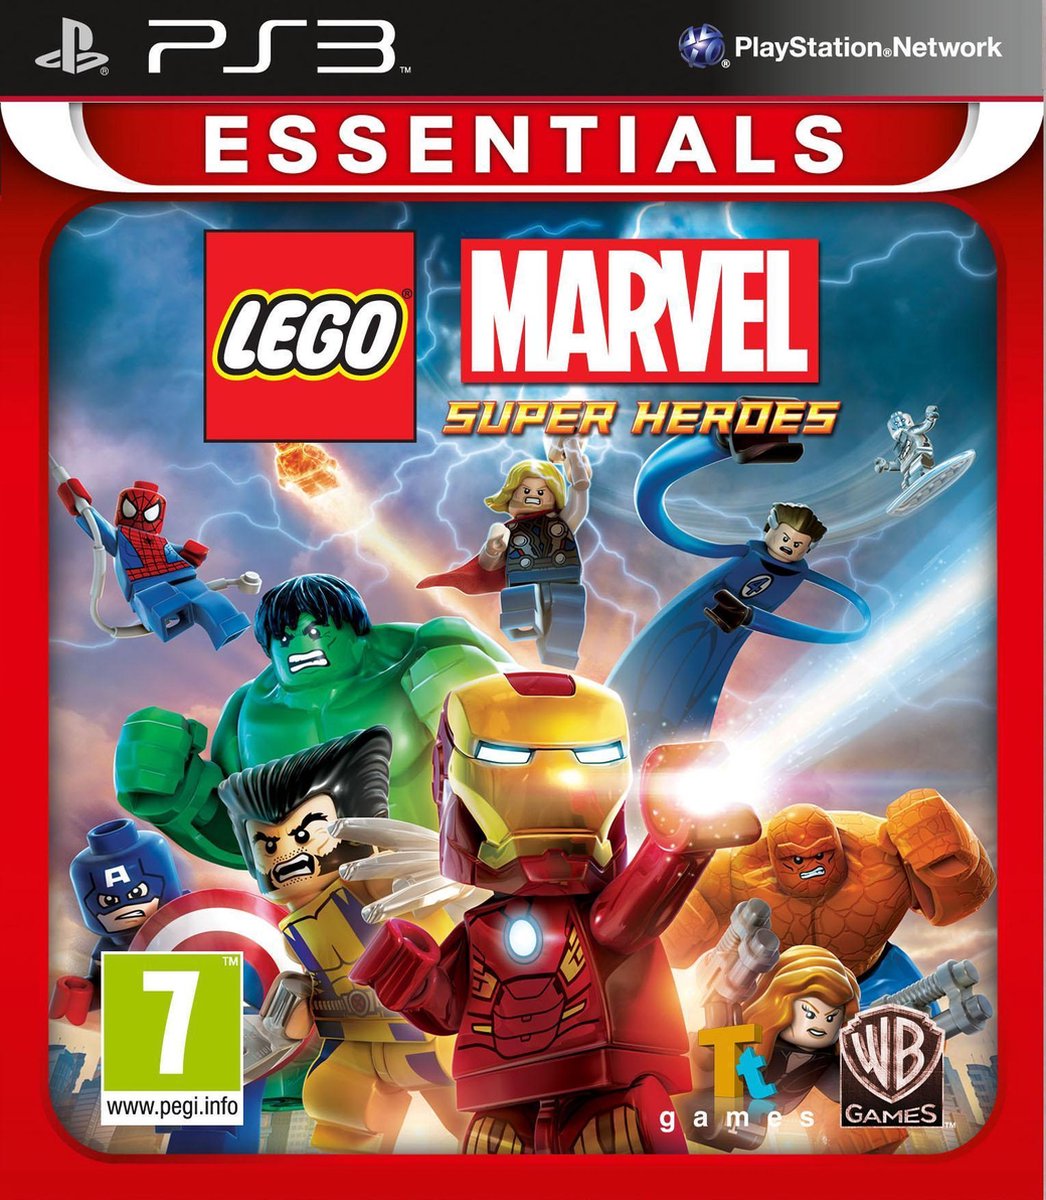 Gespierd explosie uitzending LEGO Marvel Super Heroes PS3 | Games | bol.com